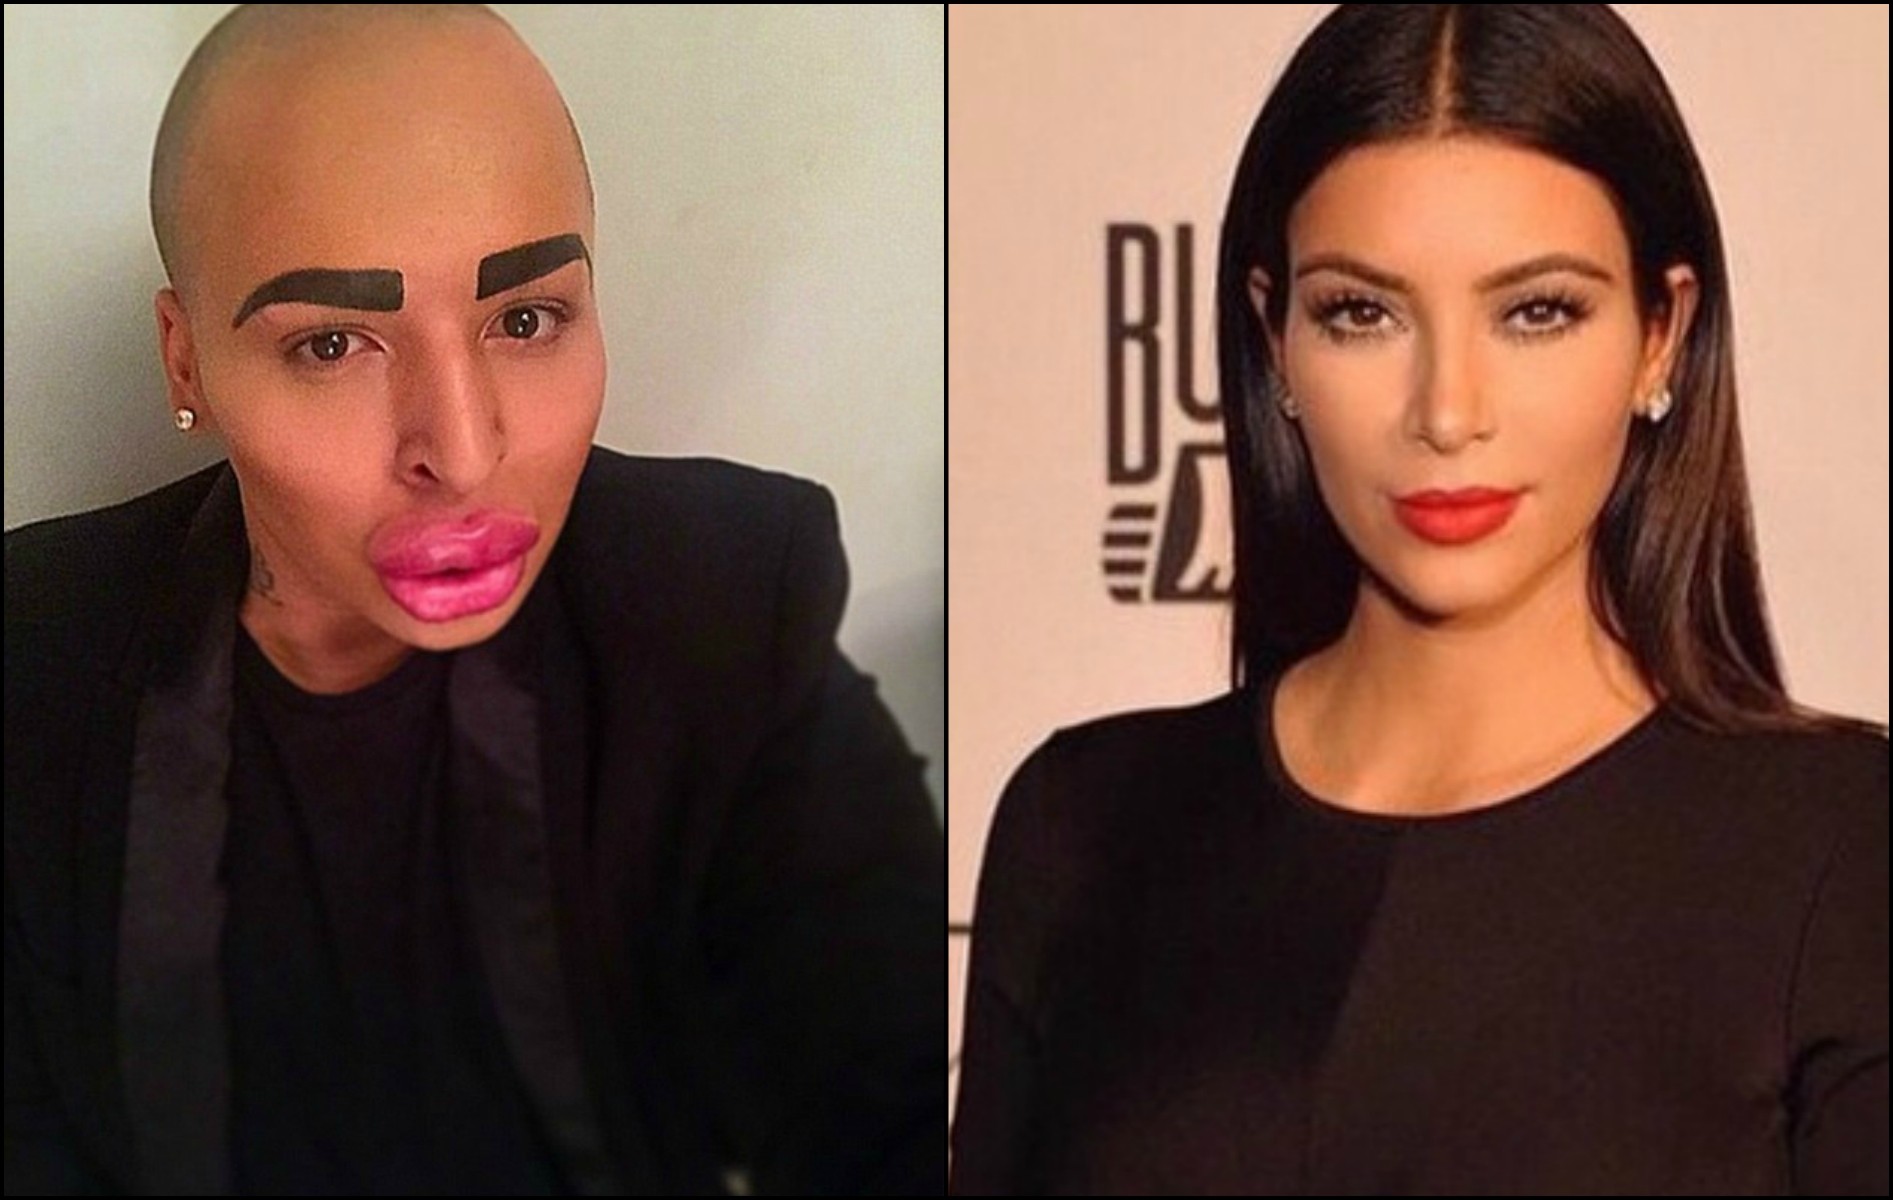 Jordan James Parke quer a todo custo se parecer com Kim Kardashian. Um batom pode ajudar... (Foto: Instagram)